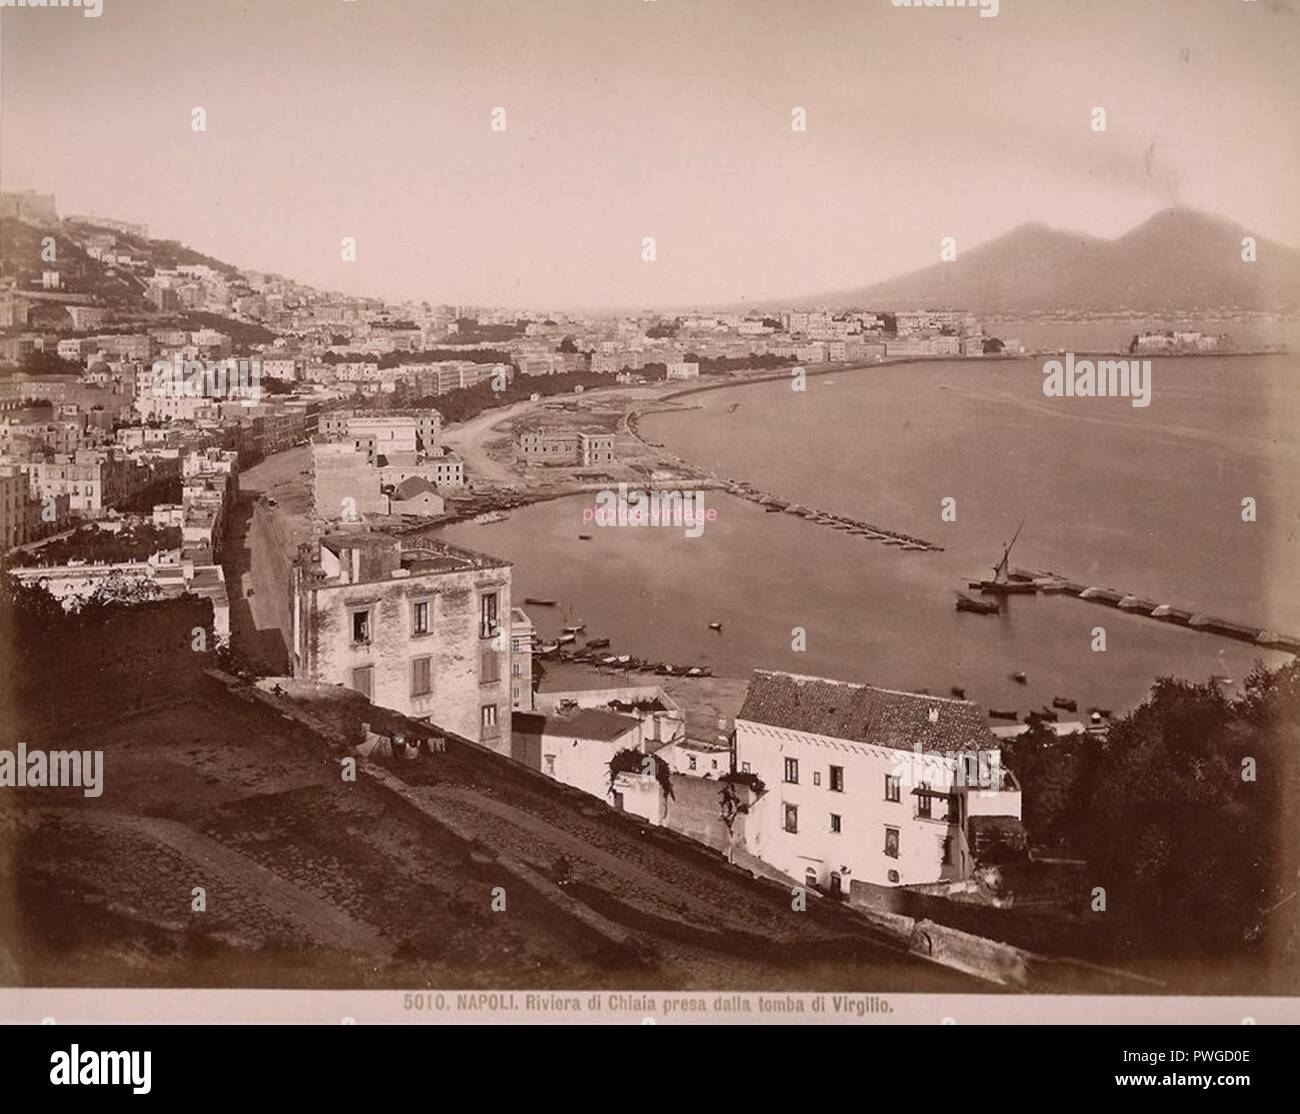 Brogi, Giacomo (1822-1881) - n. 5010 - Napoli - Riviera di Chiaia dalla tomba di Virgilio. Stock Photo